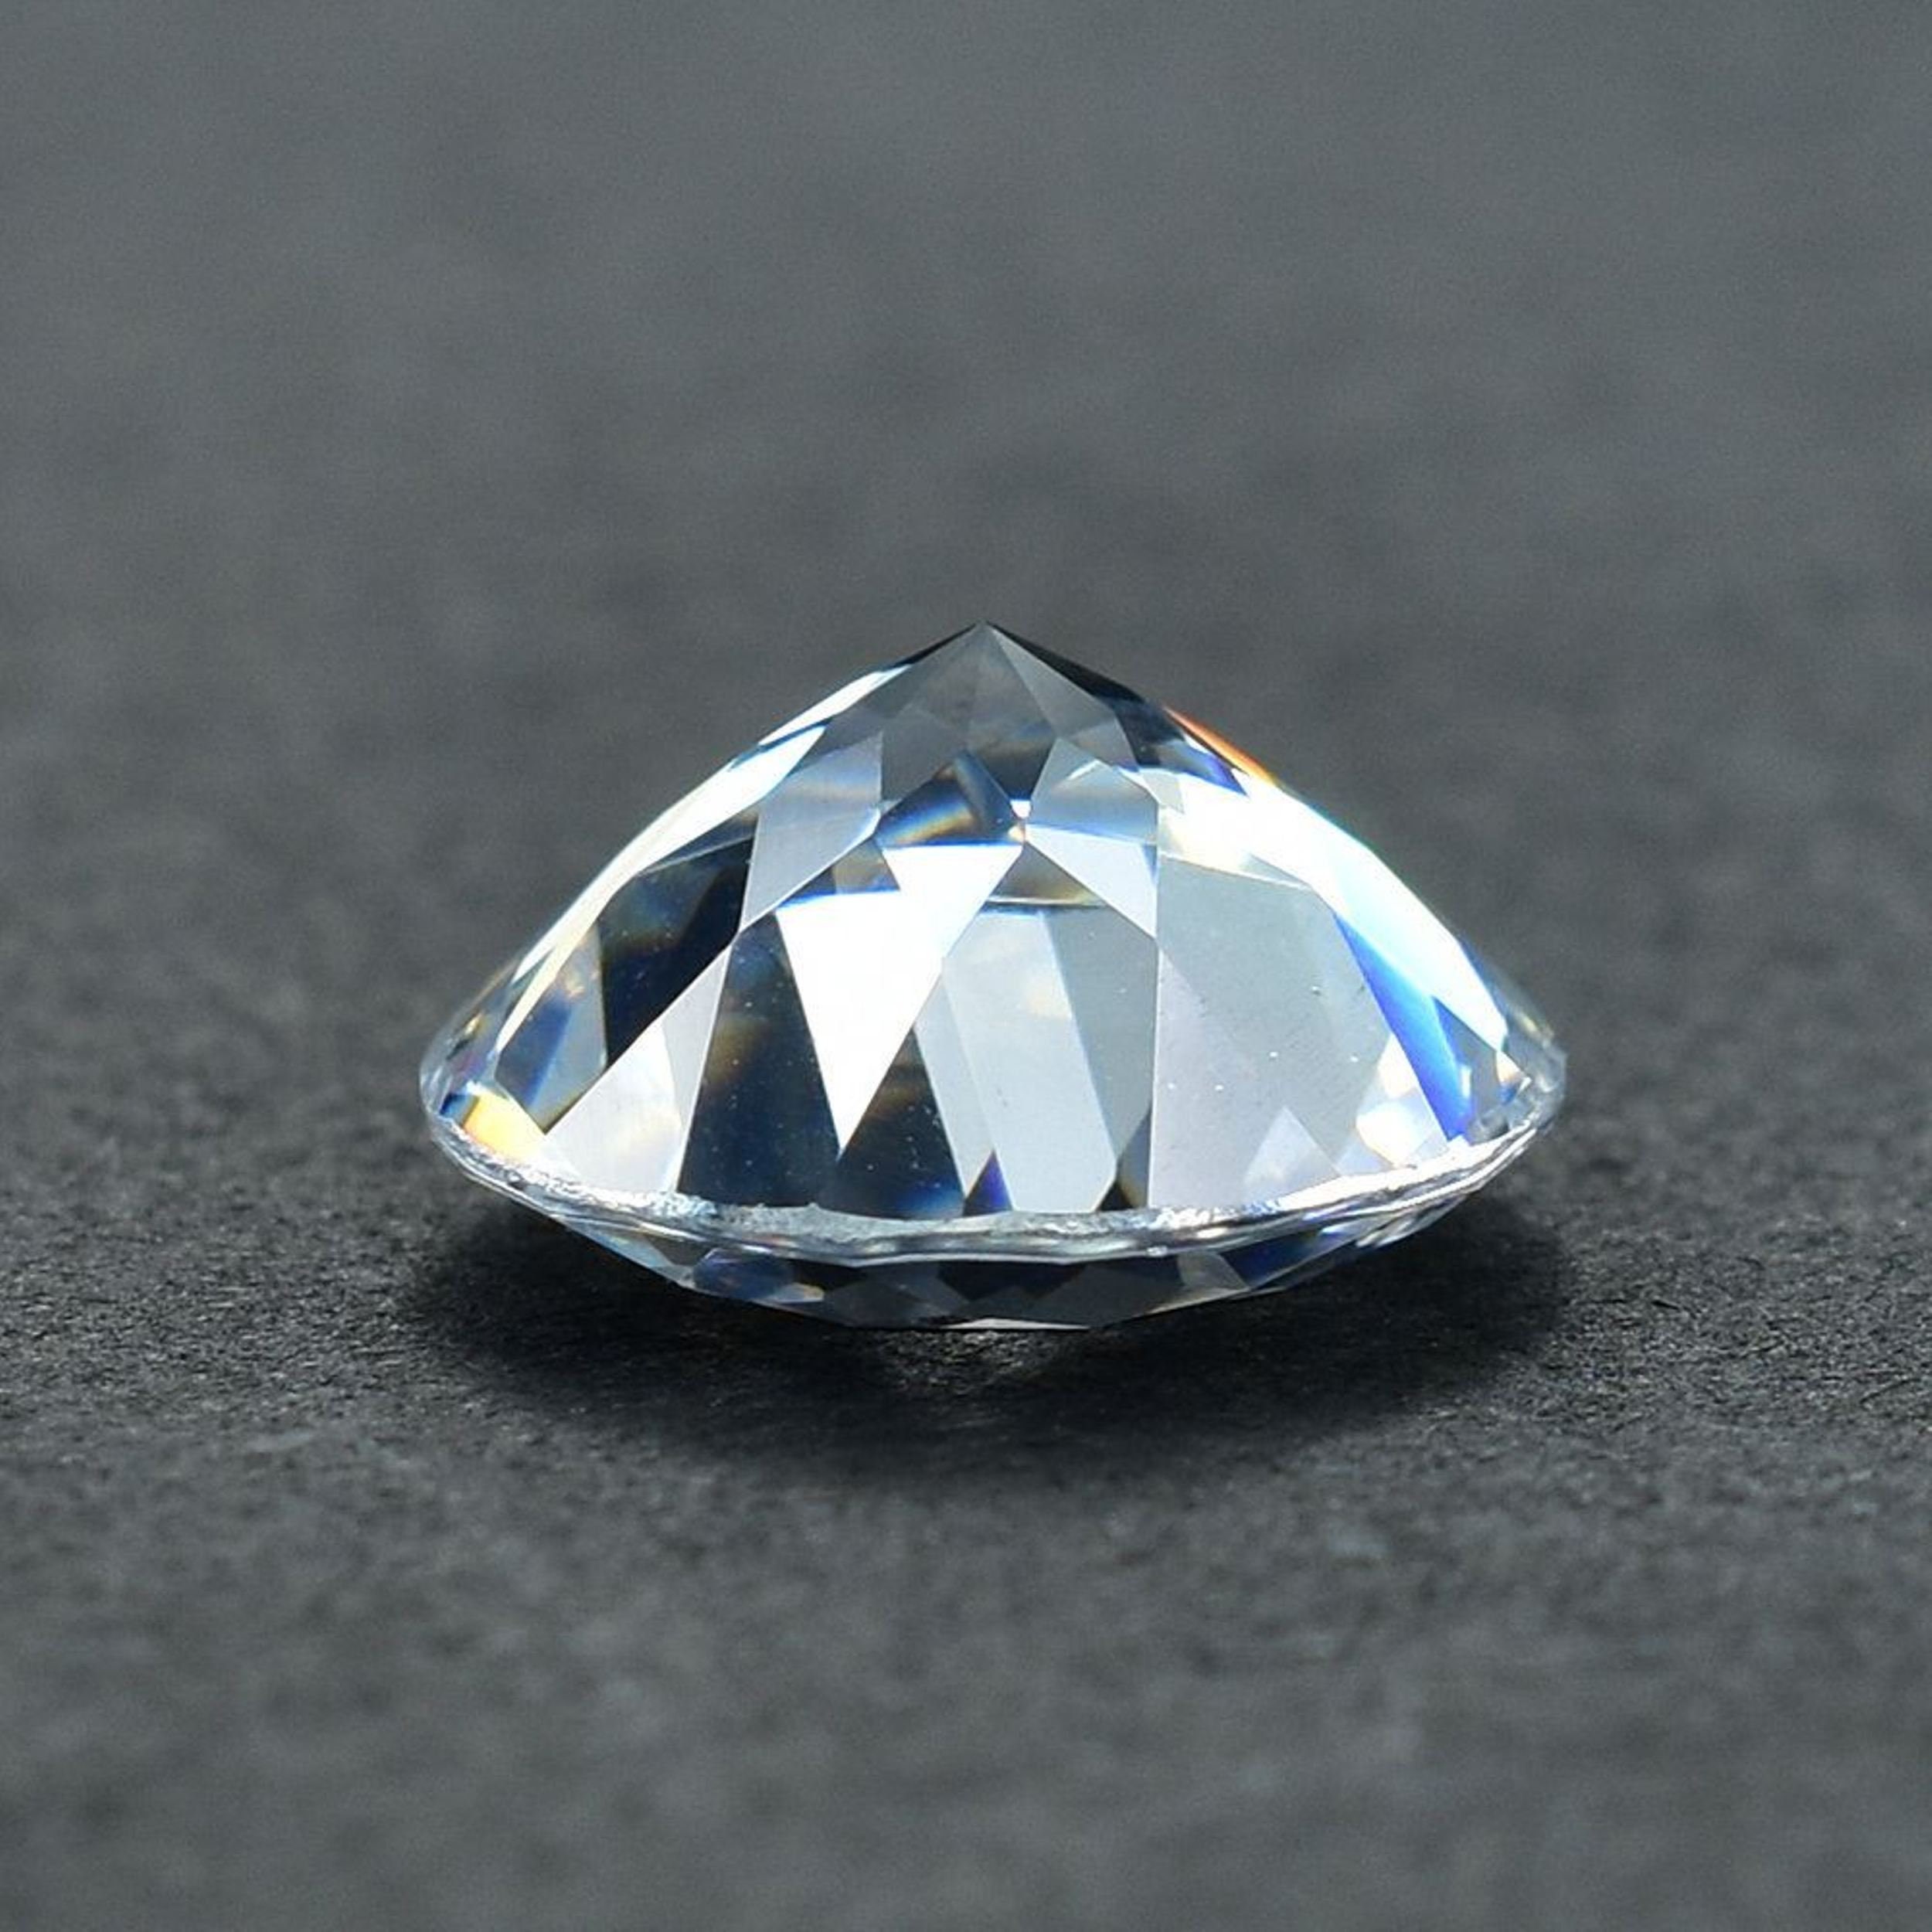 Round Cubic Zirconia Diamond Brilliant Cut Loose stones AAAAA | Etsy